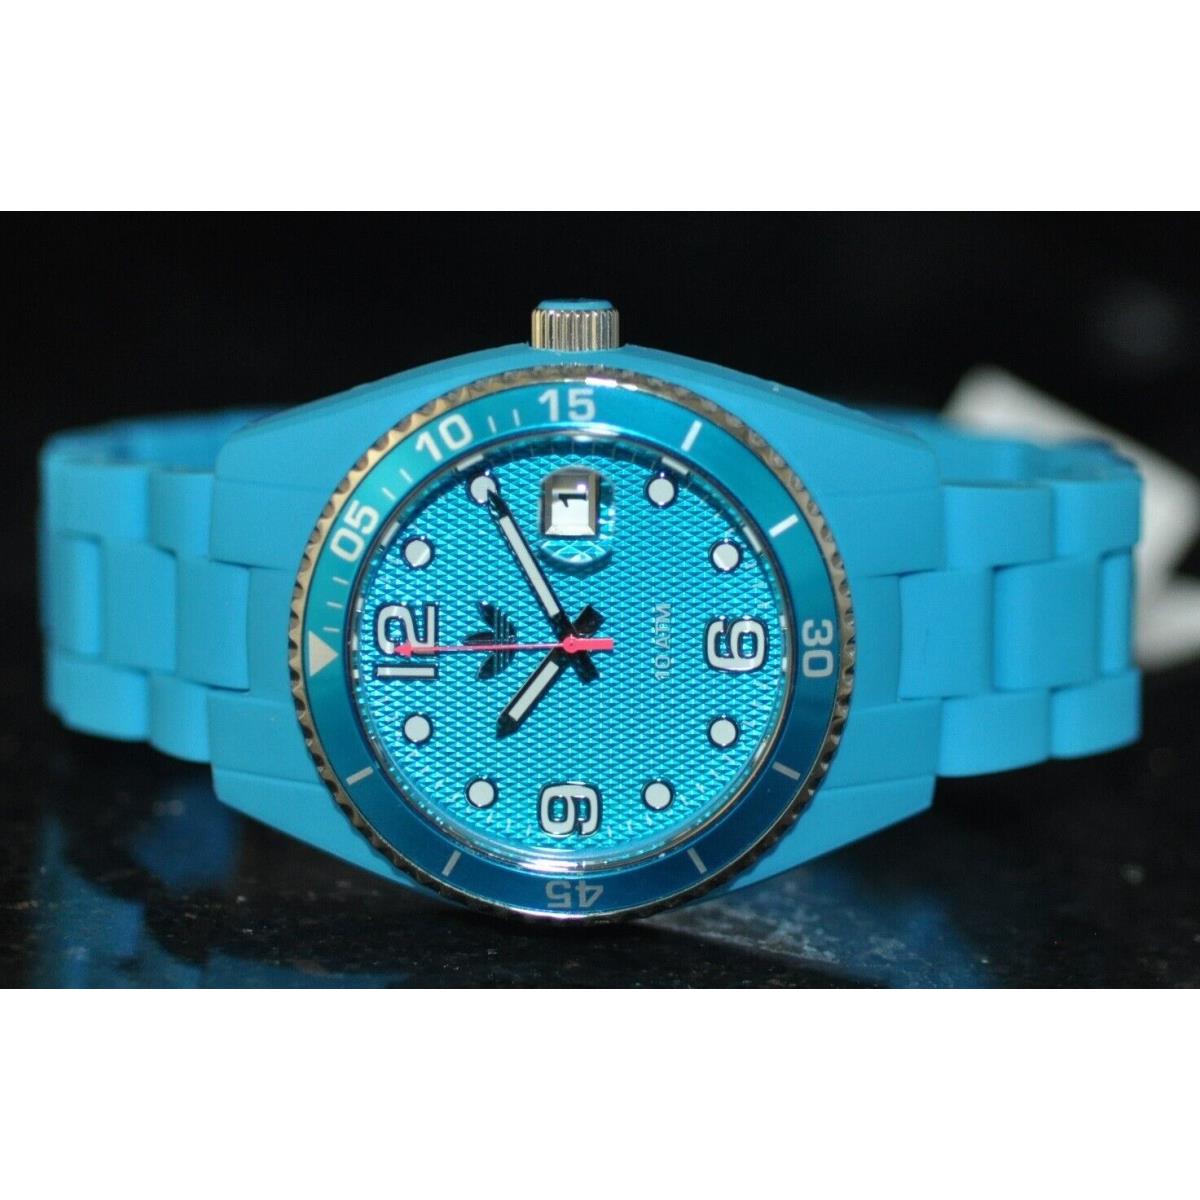 Adidas Brisbane Blue Dial Blue Polyurethane Watch ADH6163